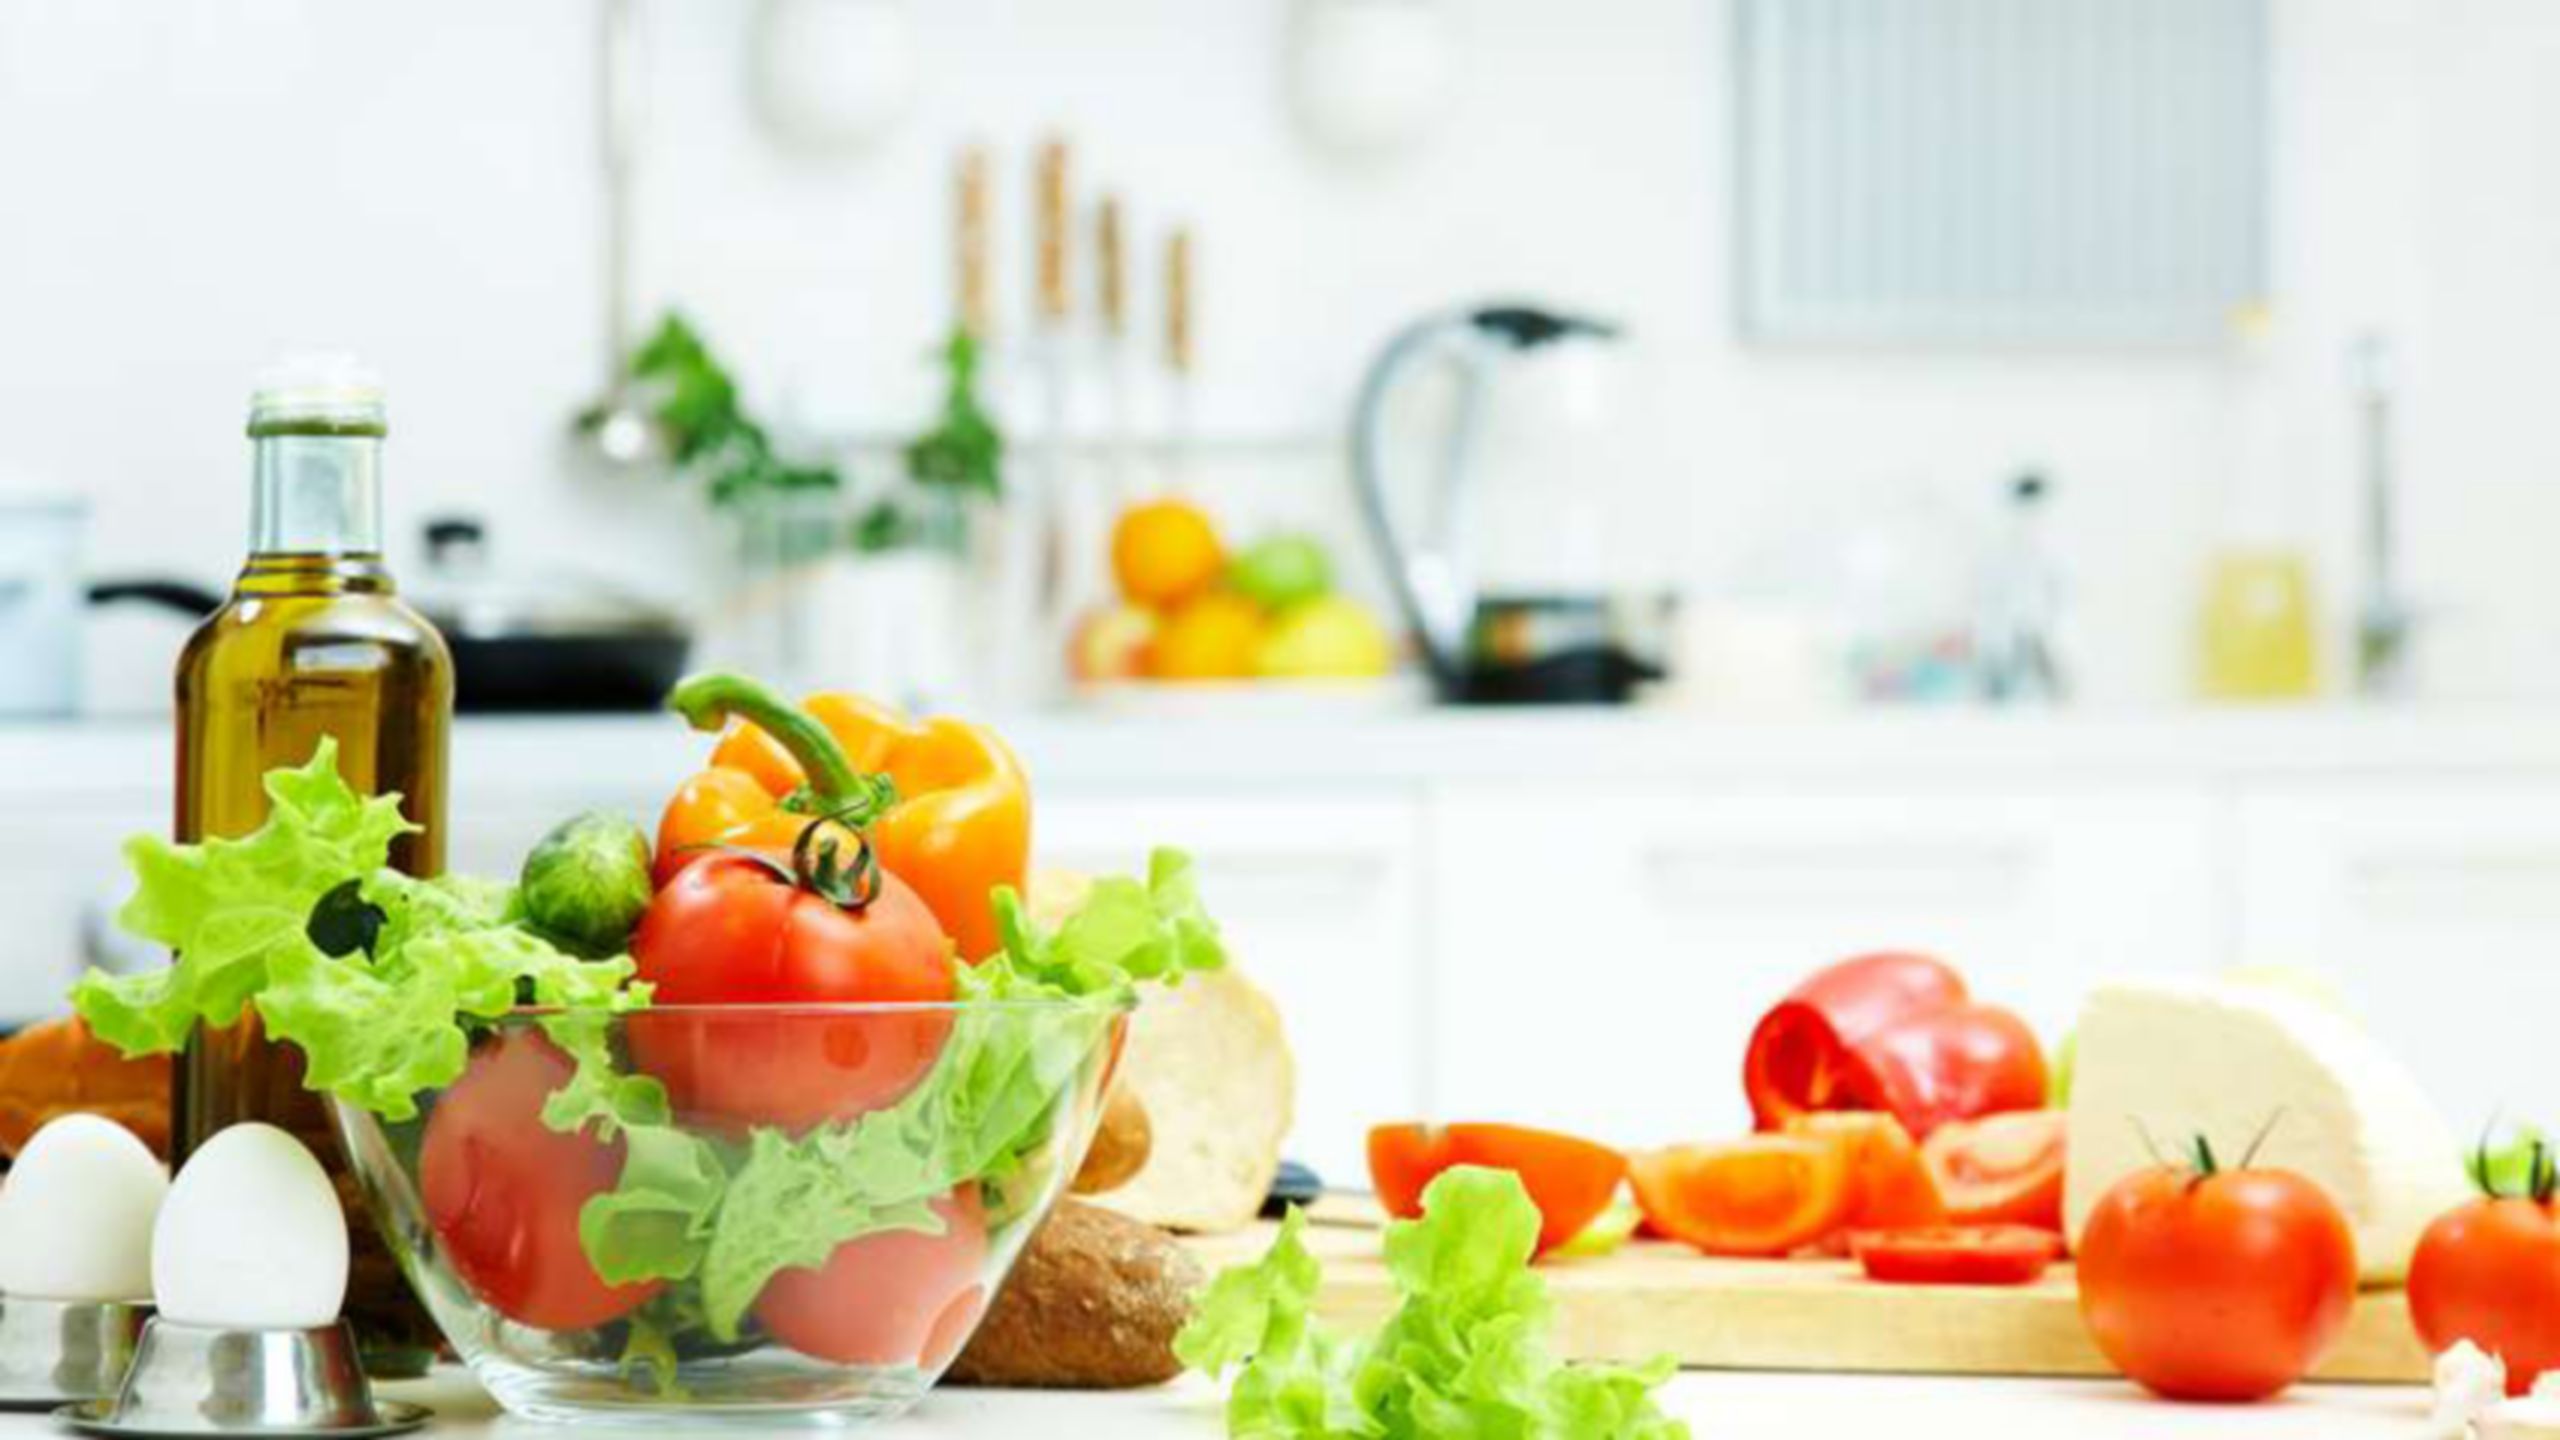 トマト、レタス、卵などサラダをつくる材料と、キッチンカウンター